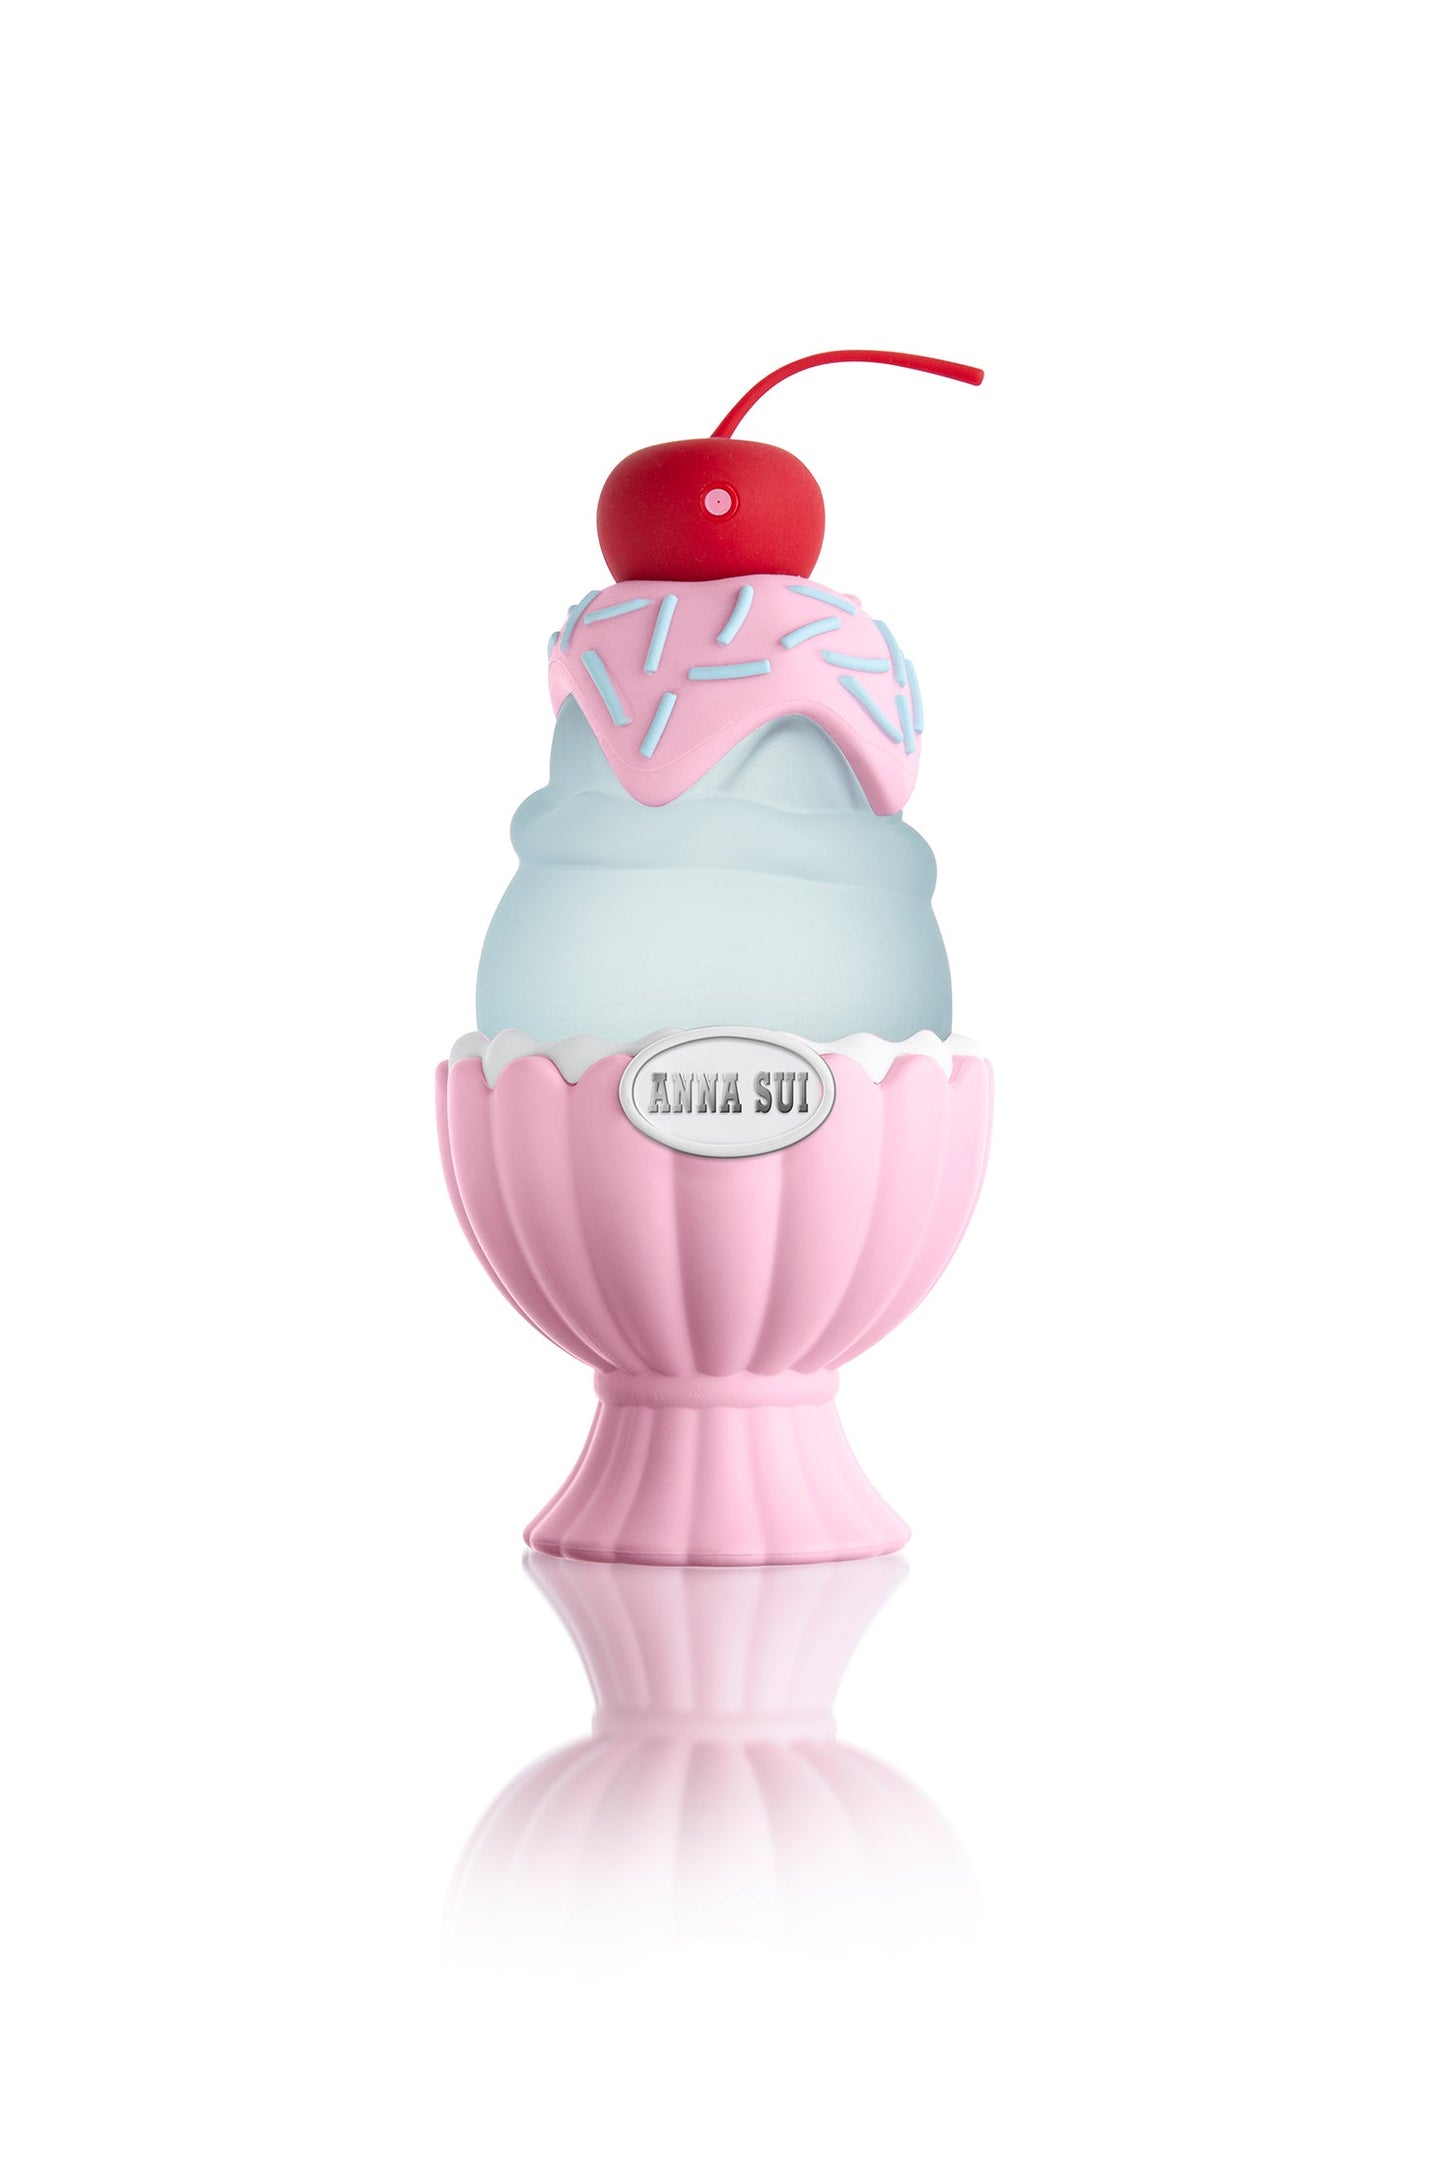 Il se présente dans un flacon rose avec un coquillage au fond et une crème glacée bleue avec une cerise sur le dessus.